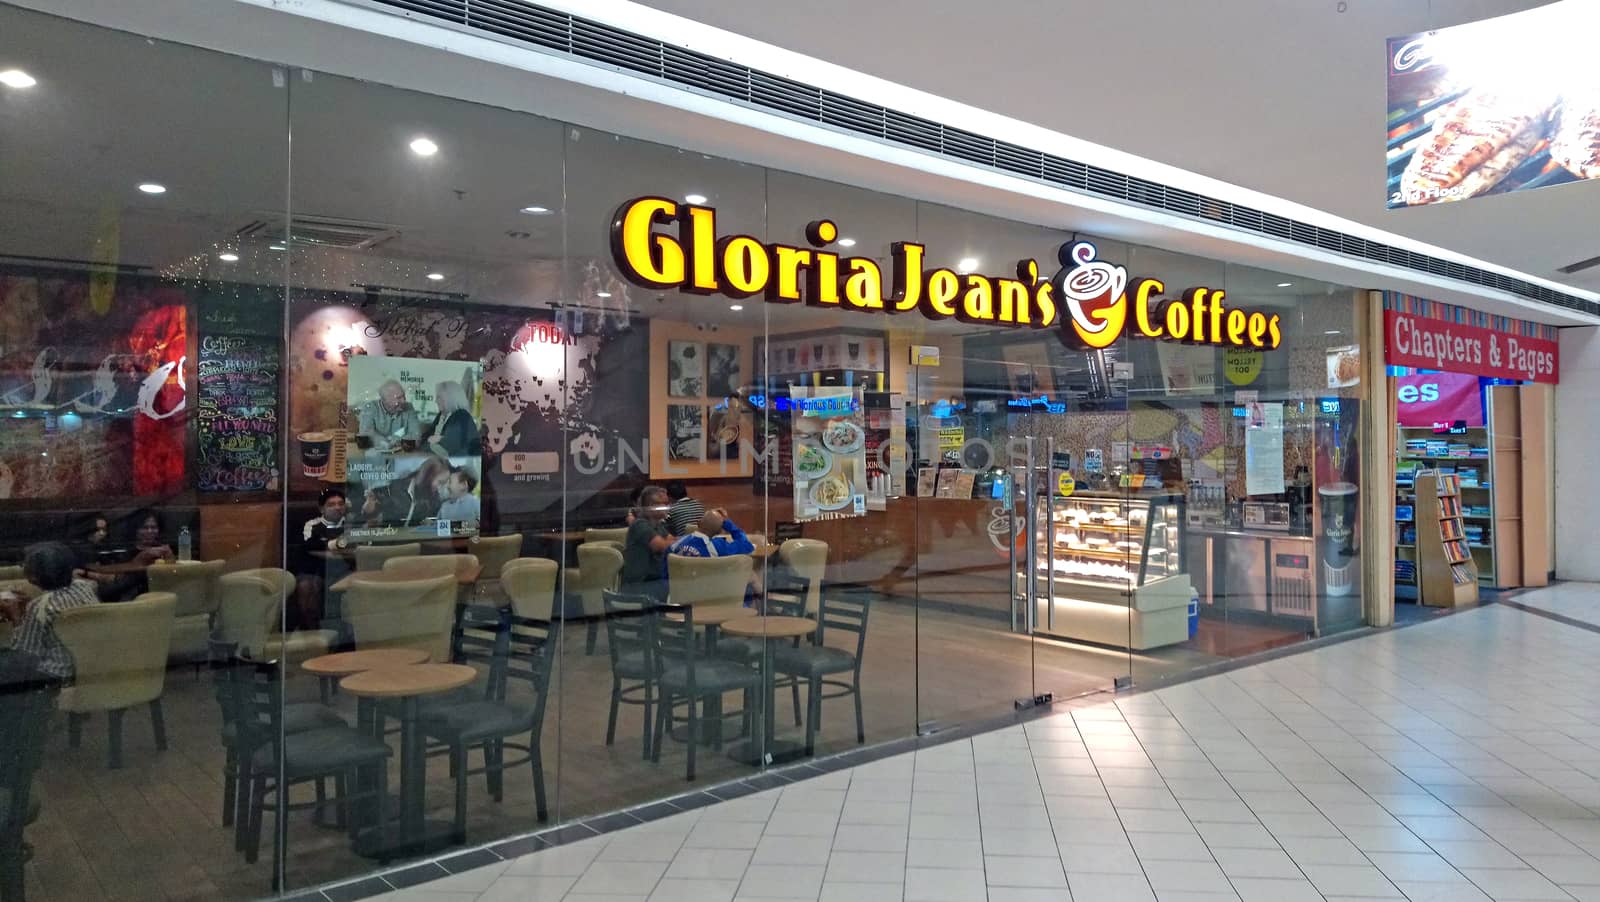 Gloria Jeans coffee facade  at SM Santa Mesa in Quezon City, Phi by imwaltersy